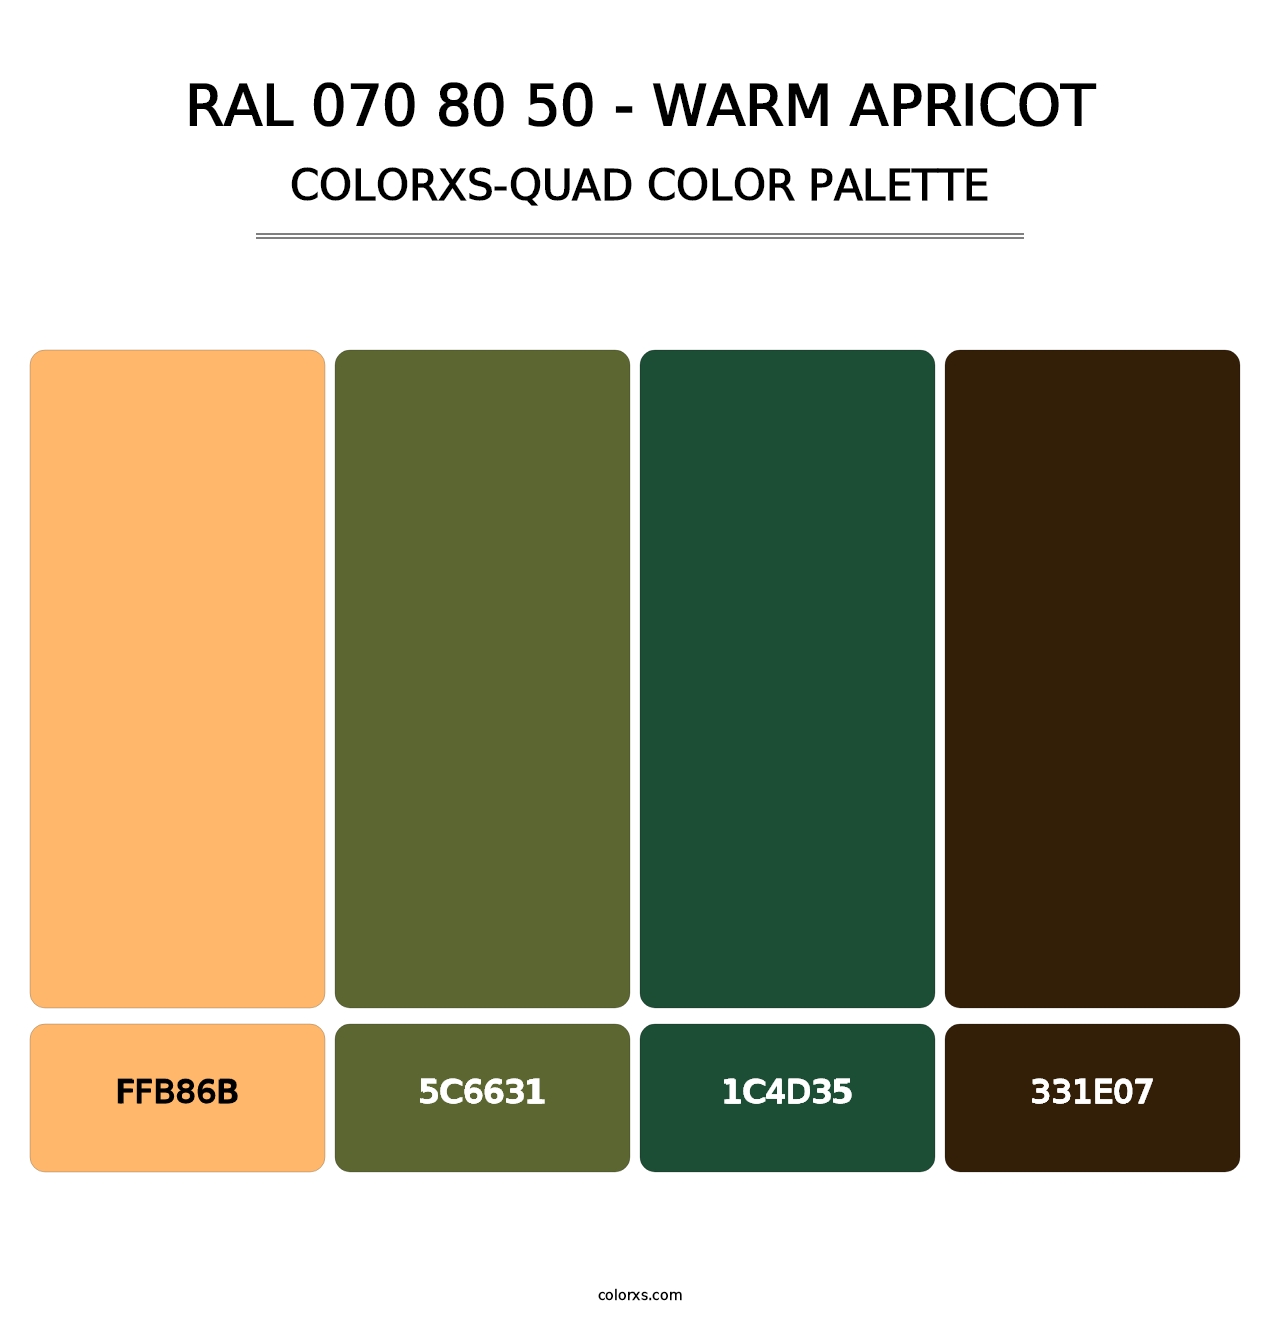 RAL 070 80 50 - Warm Apricot - Colorxs Quad Palette